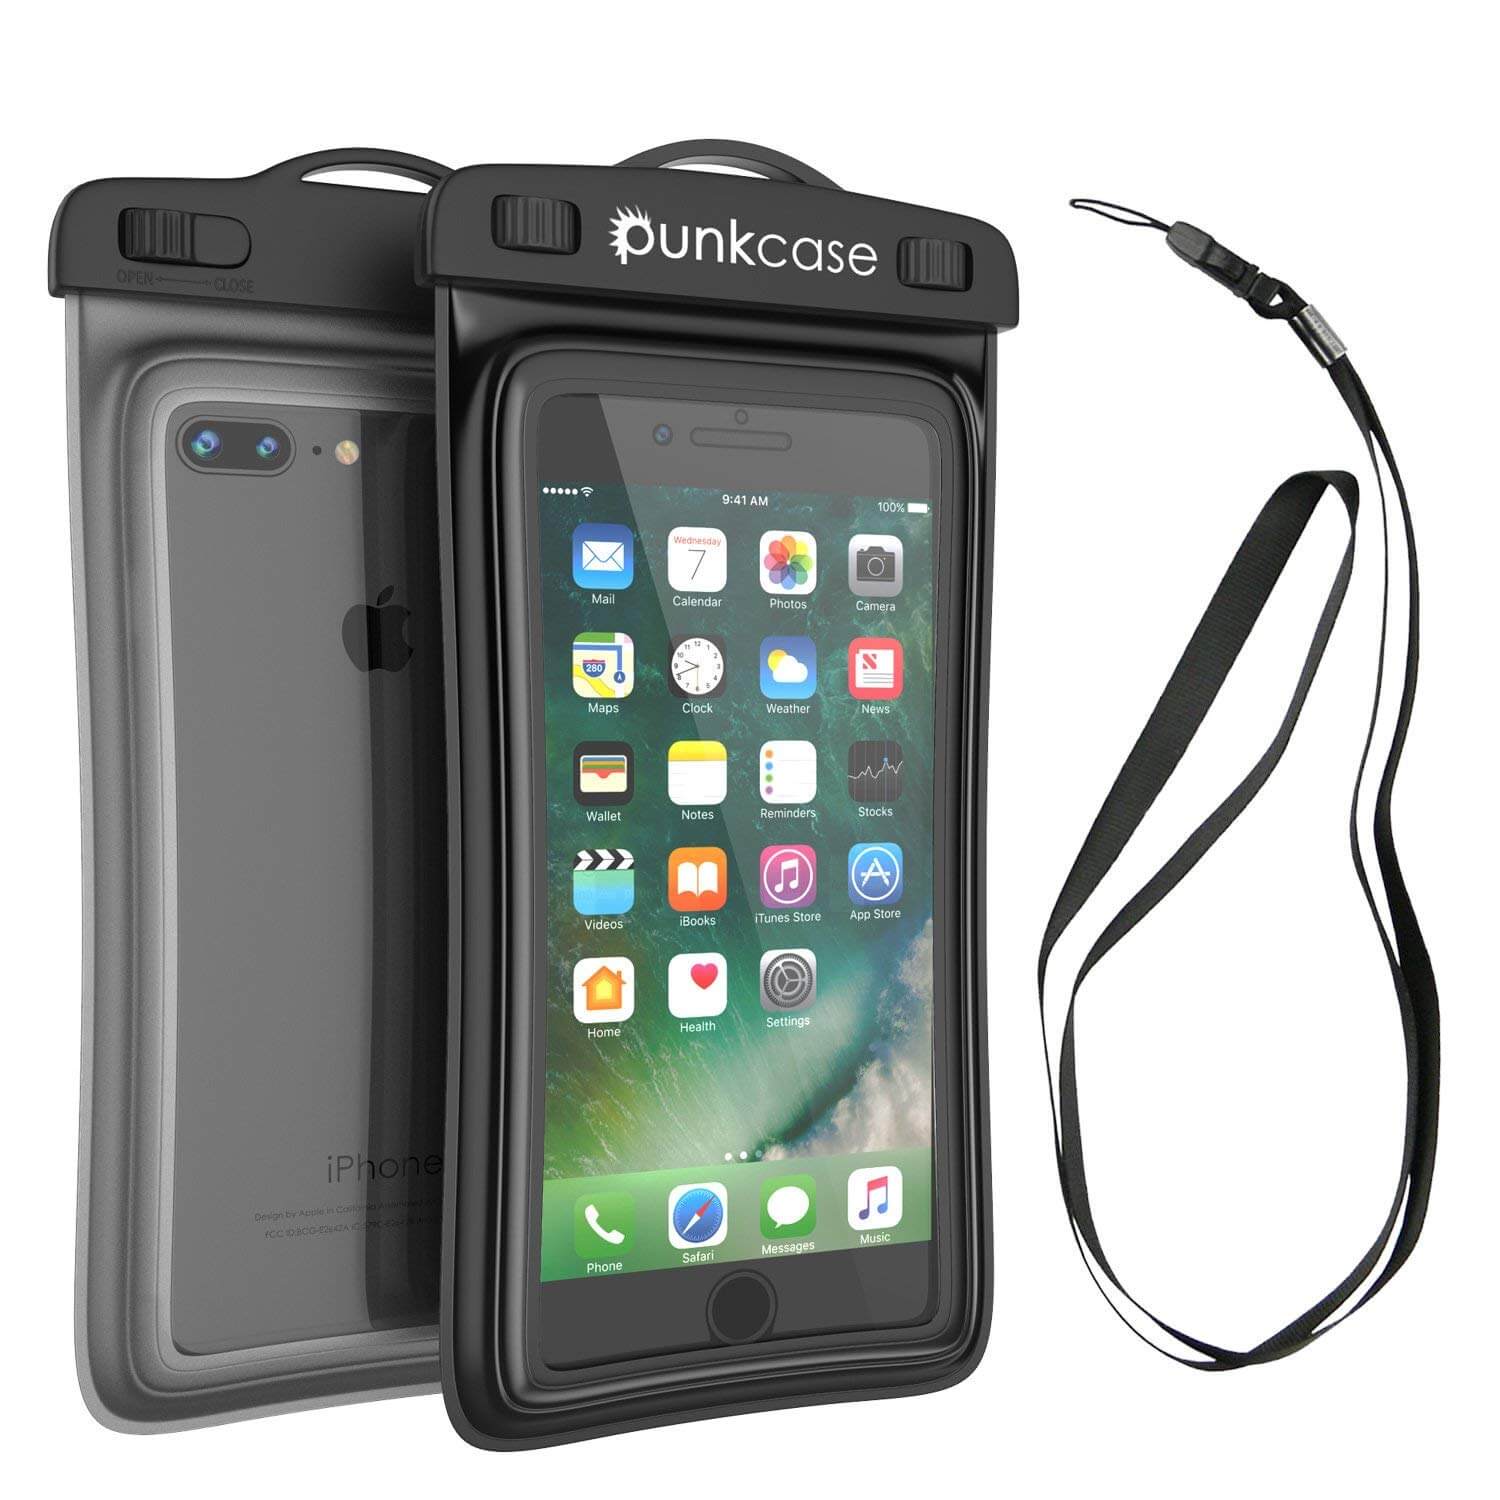 waterproof smartphone cases